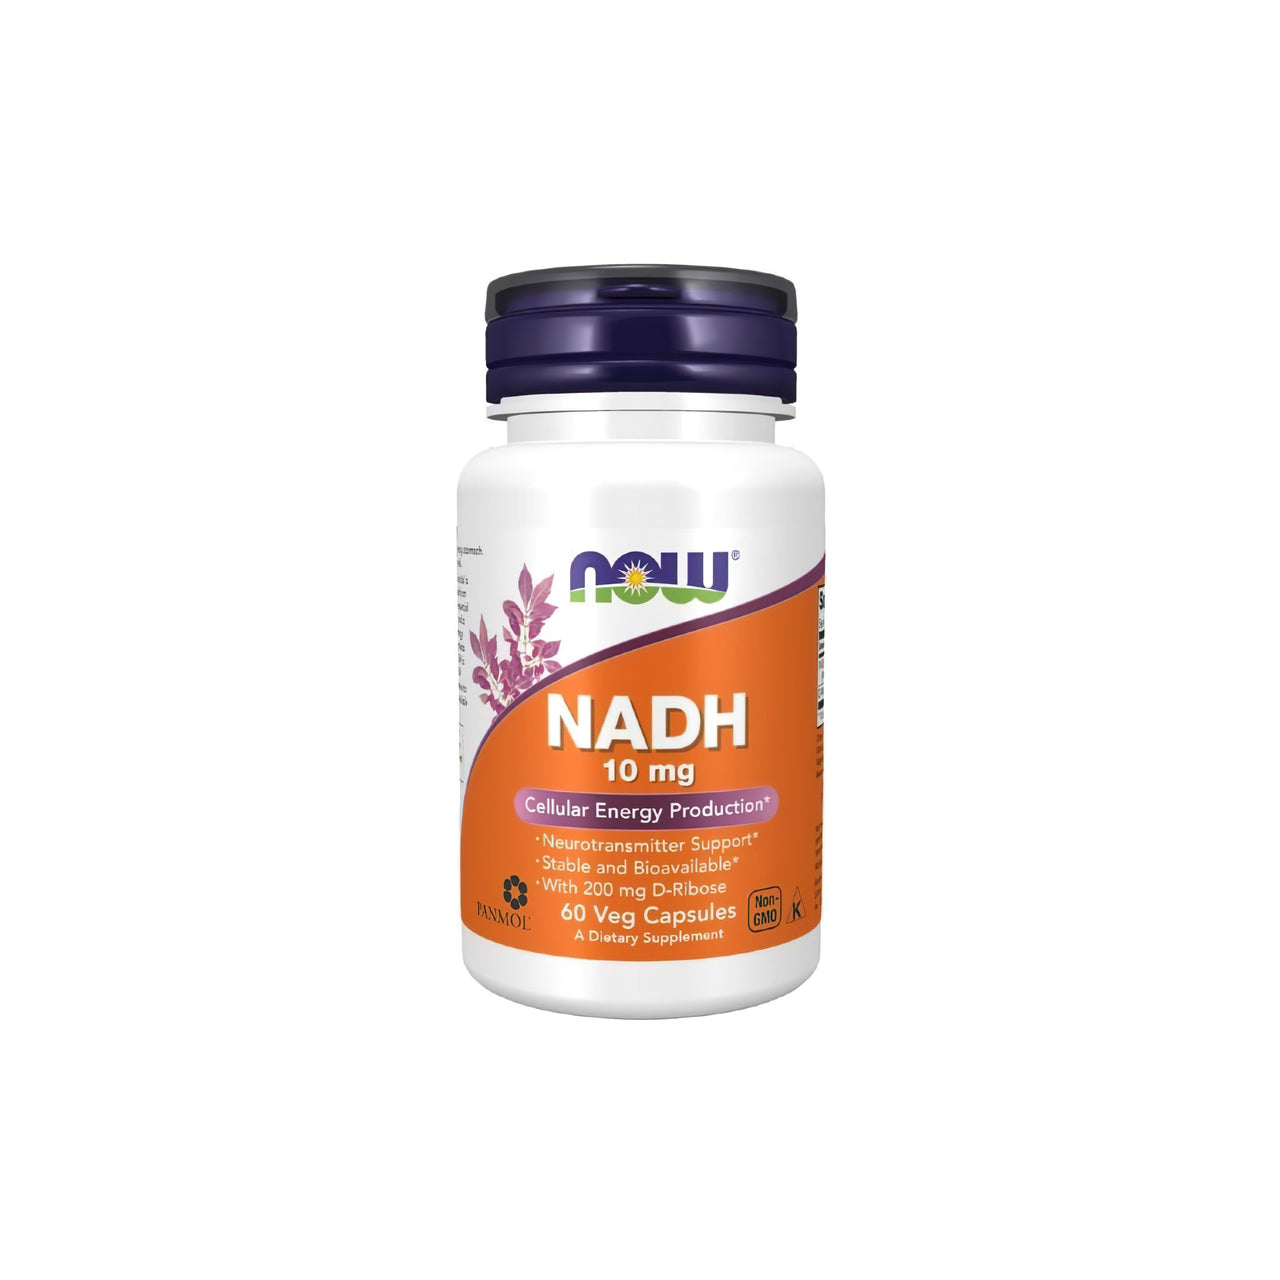 Now Foods NADH 10 mg 60 gélules végétales est un complément naturel qui permet de lutter efficacement contre la fatigue et l'épuisement. Ces gélules stimulent la production d'énergie dans l'organisme, ce qui se traduit par une augmentation des niveaux d'énergie et un meilleur bien-être général.